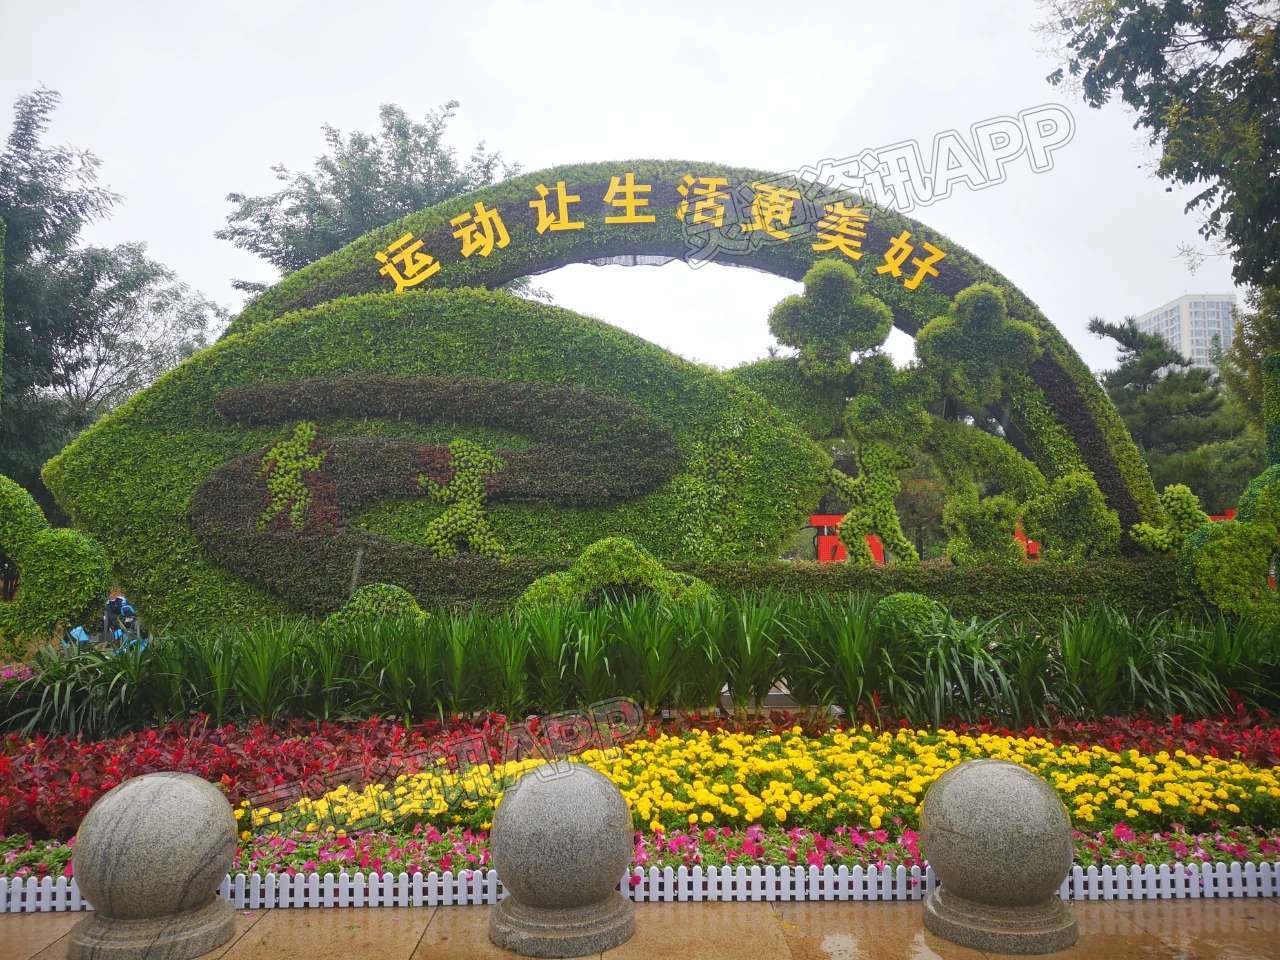 11组大型绿雕、80余万盆花卉！盛妆河东